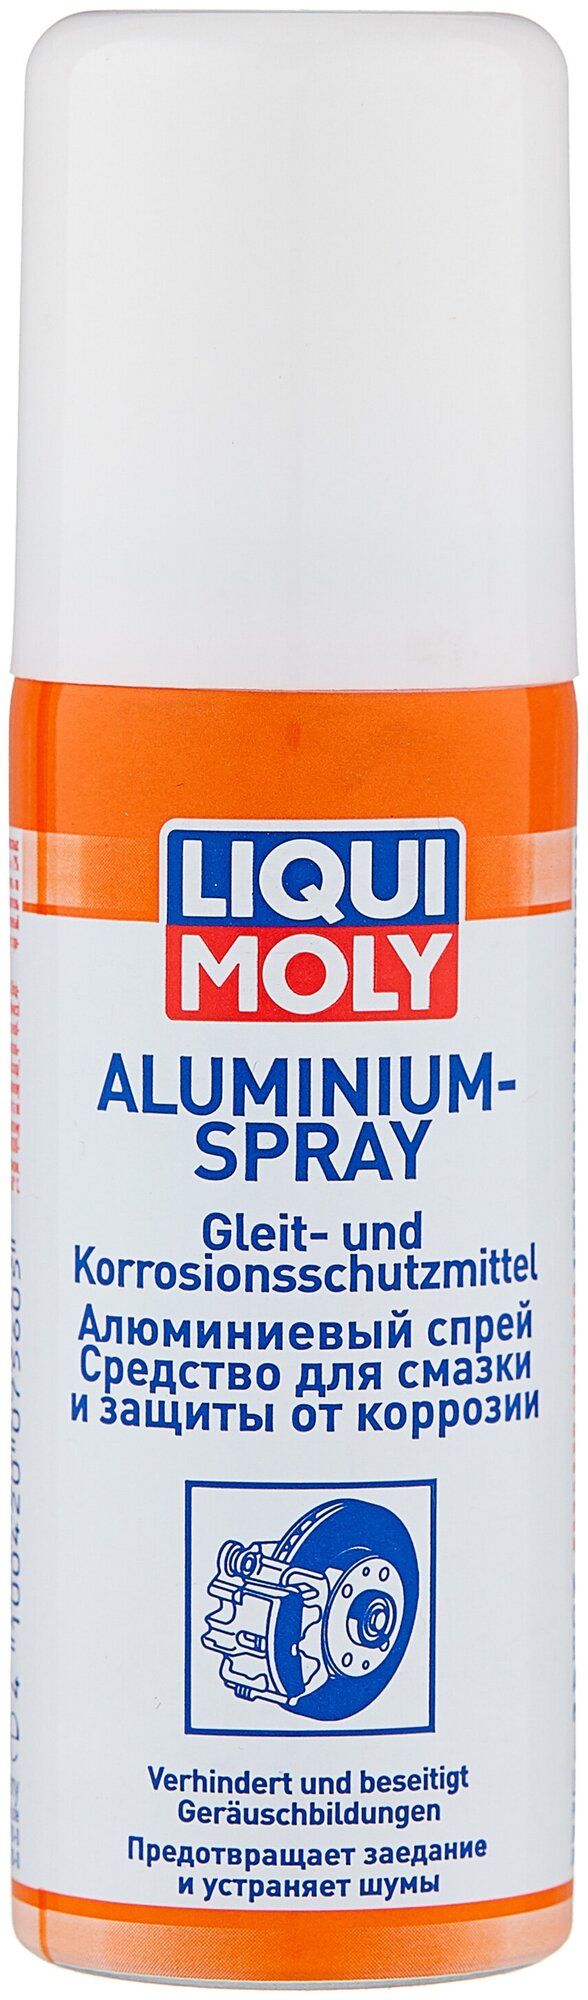 Алюминиевый спрей Liqui Moly Aluminium-Spray 0,05 л .